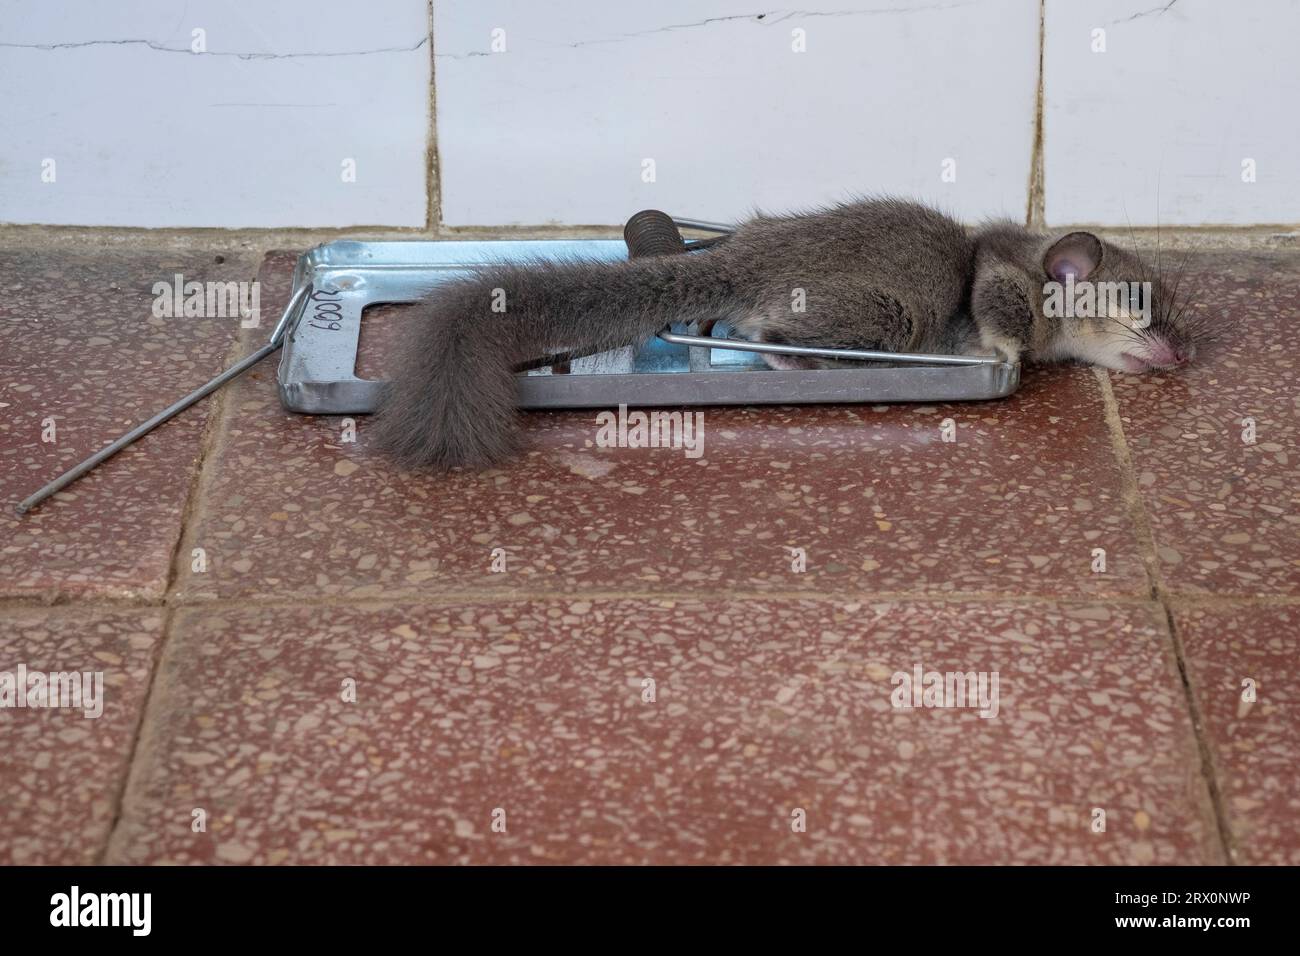 i dormori commestibili europei morti scivolano catturati nella potente trappola di topi primaverili mousetrap Foto Stock